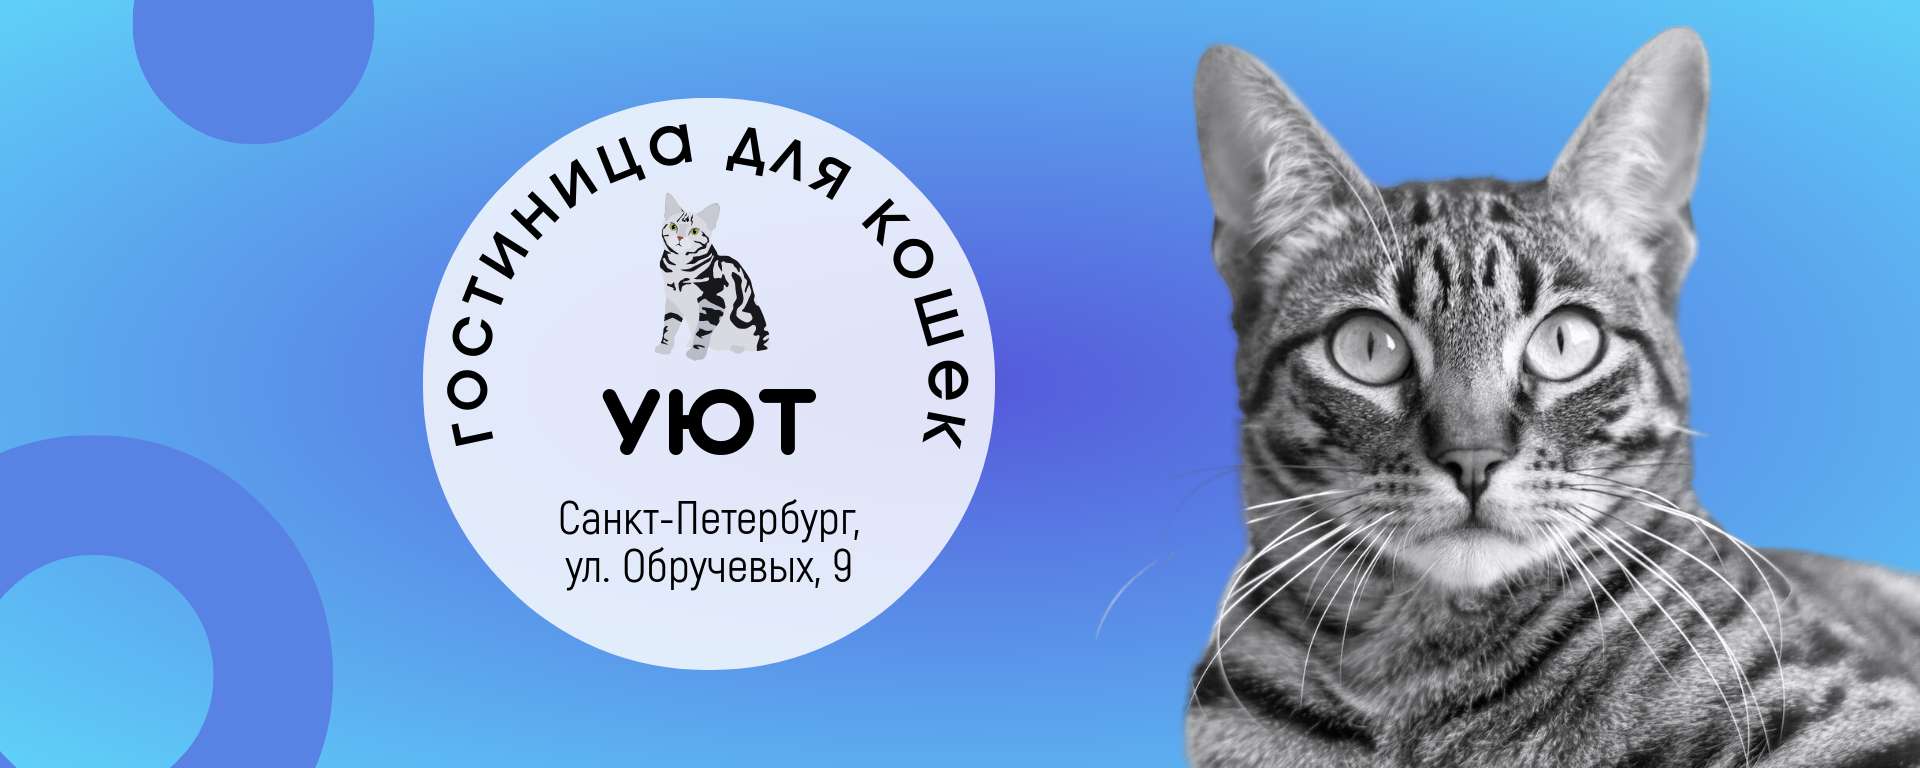 Голубая обложка сообщества Вконтакте с фотографией кота гостиница для кошек  | Flyvi